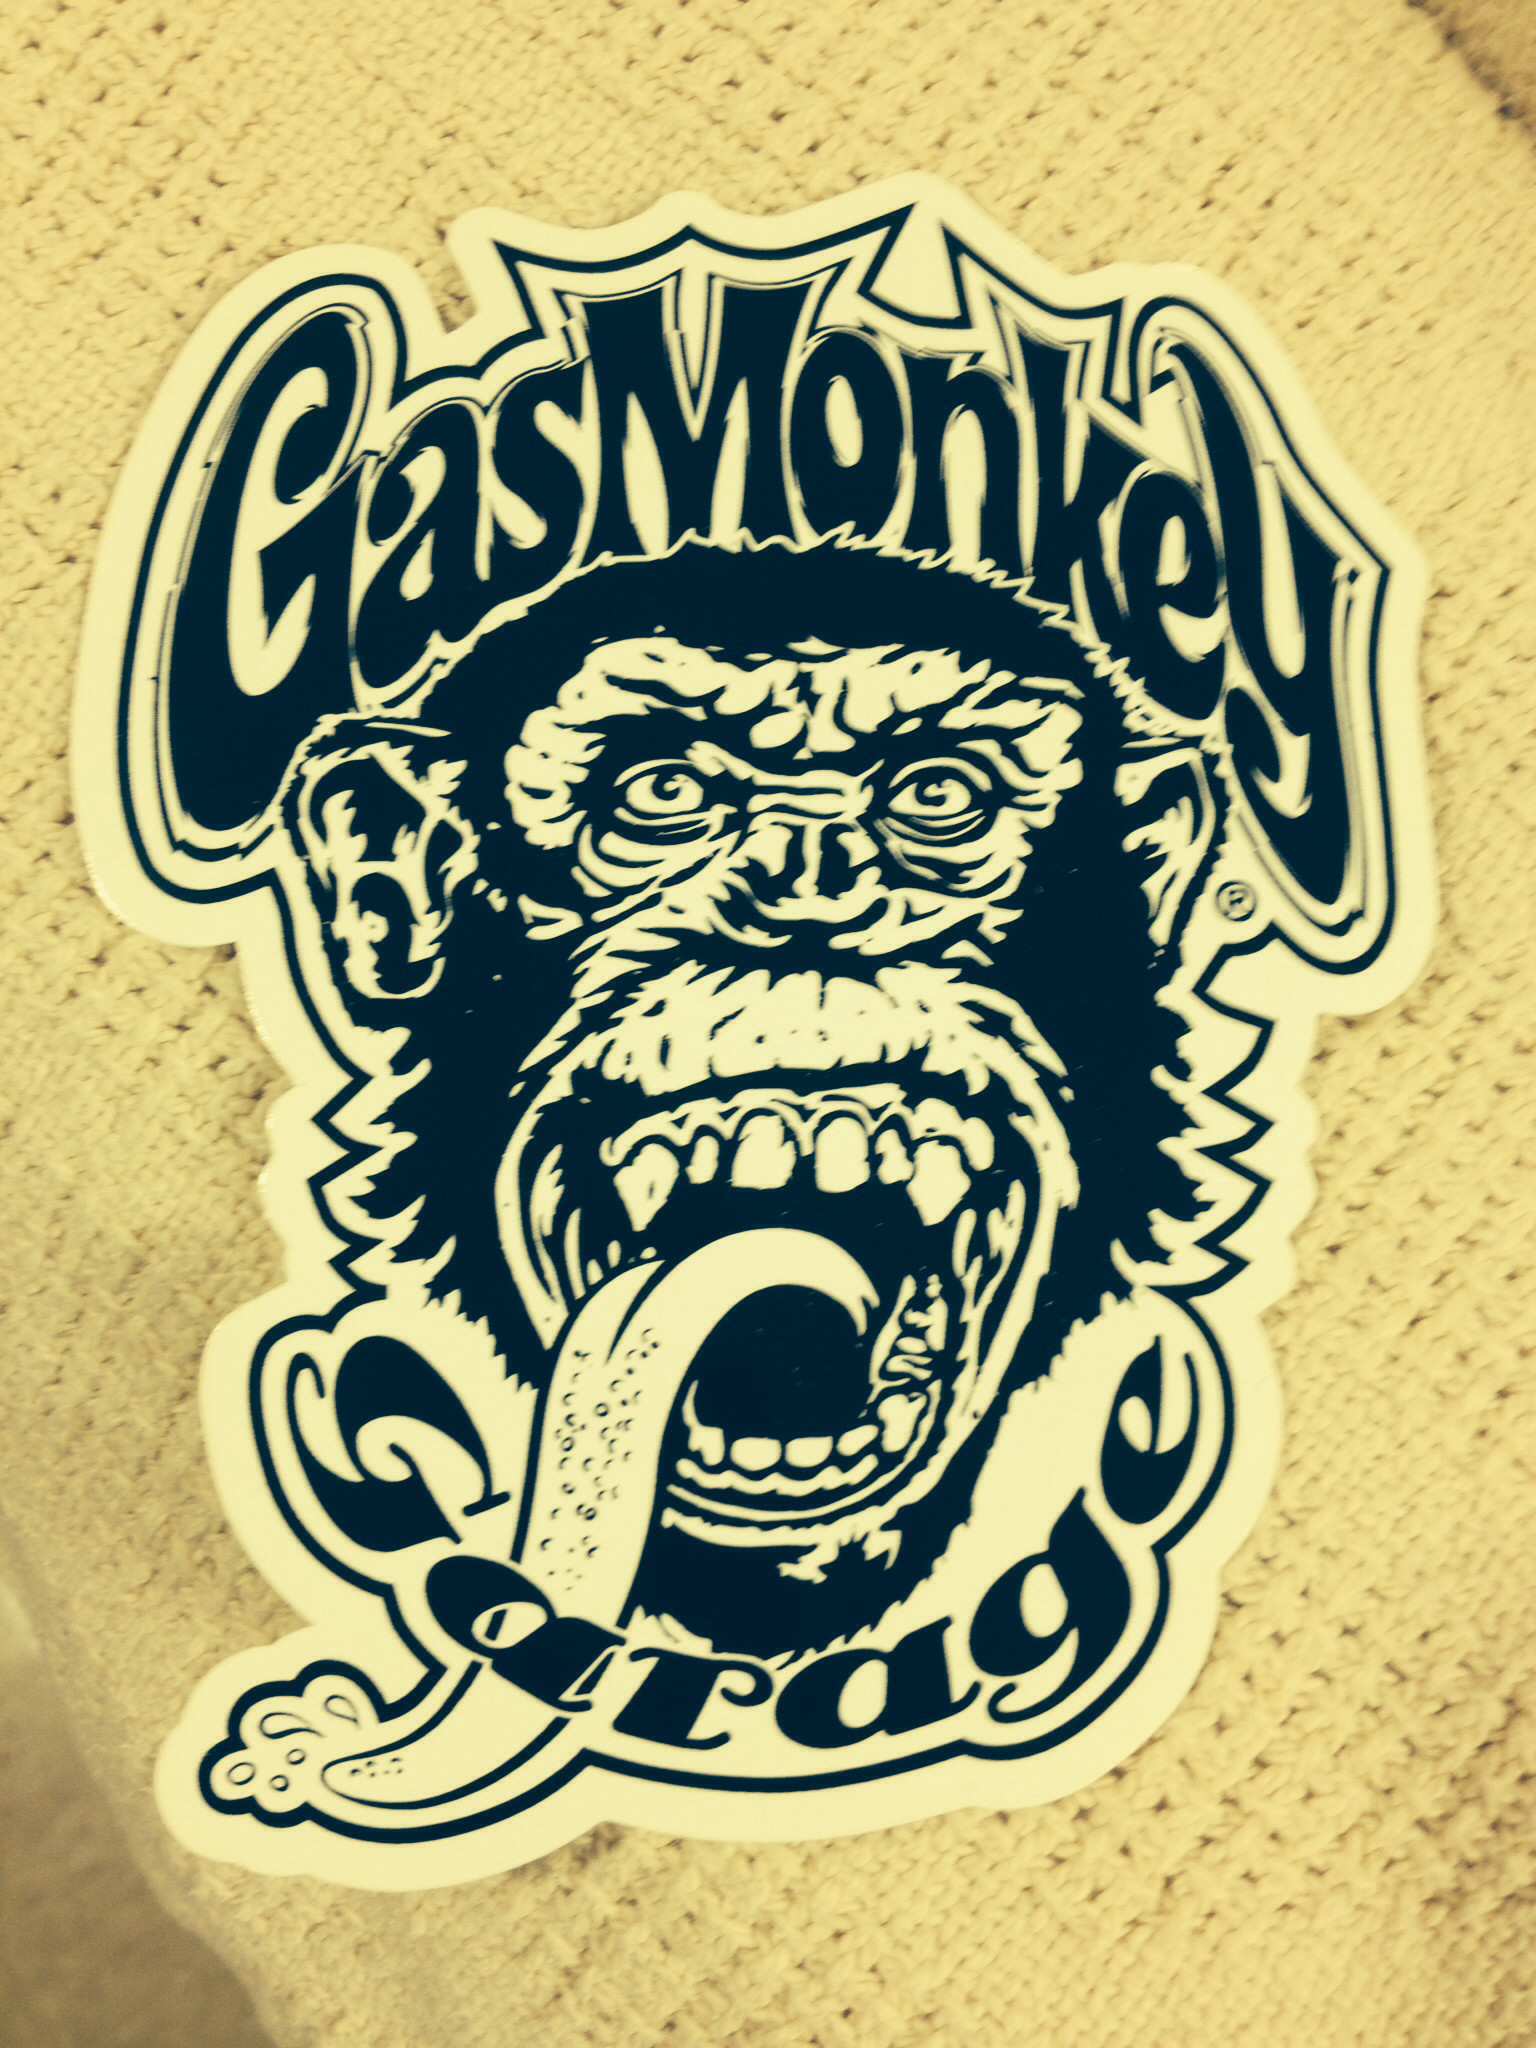 ガス猿の壁紙,図,フォント,tシャツ,霊長類,架空の人物